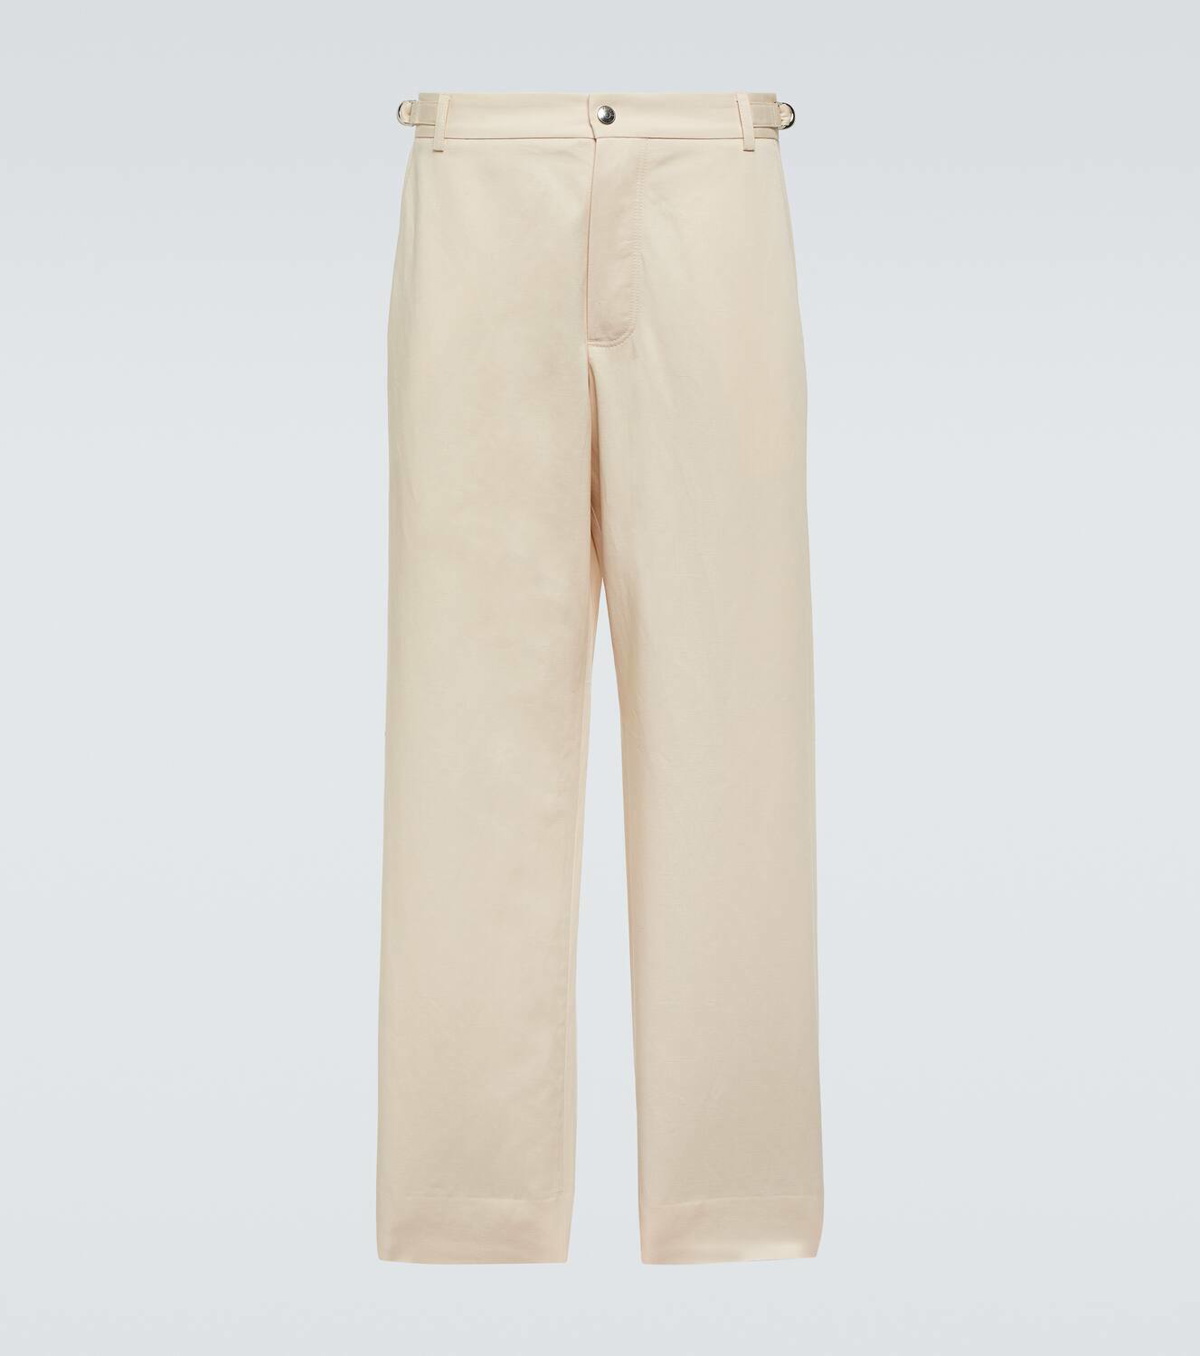 Jacquemus Le pantalon Jean cotton and linen pants